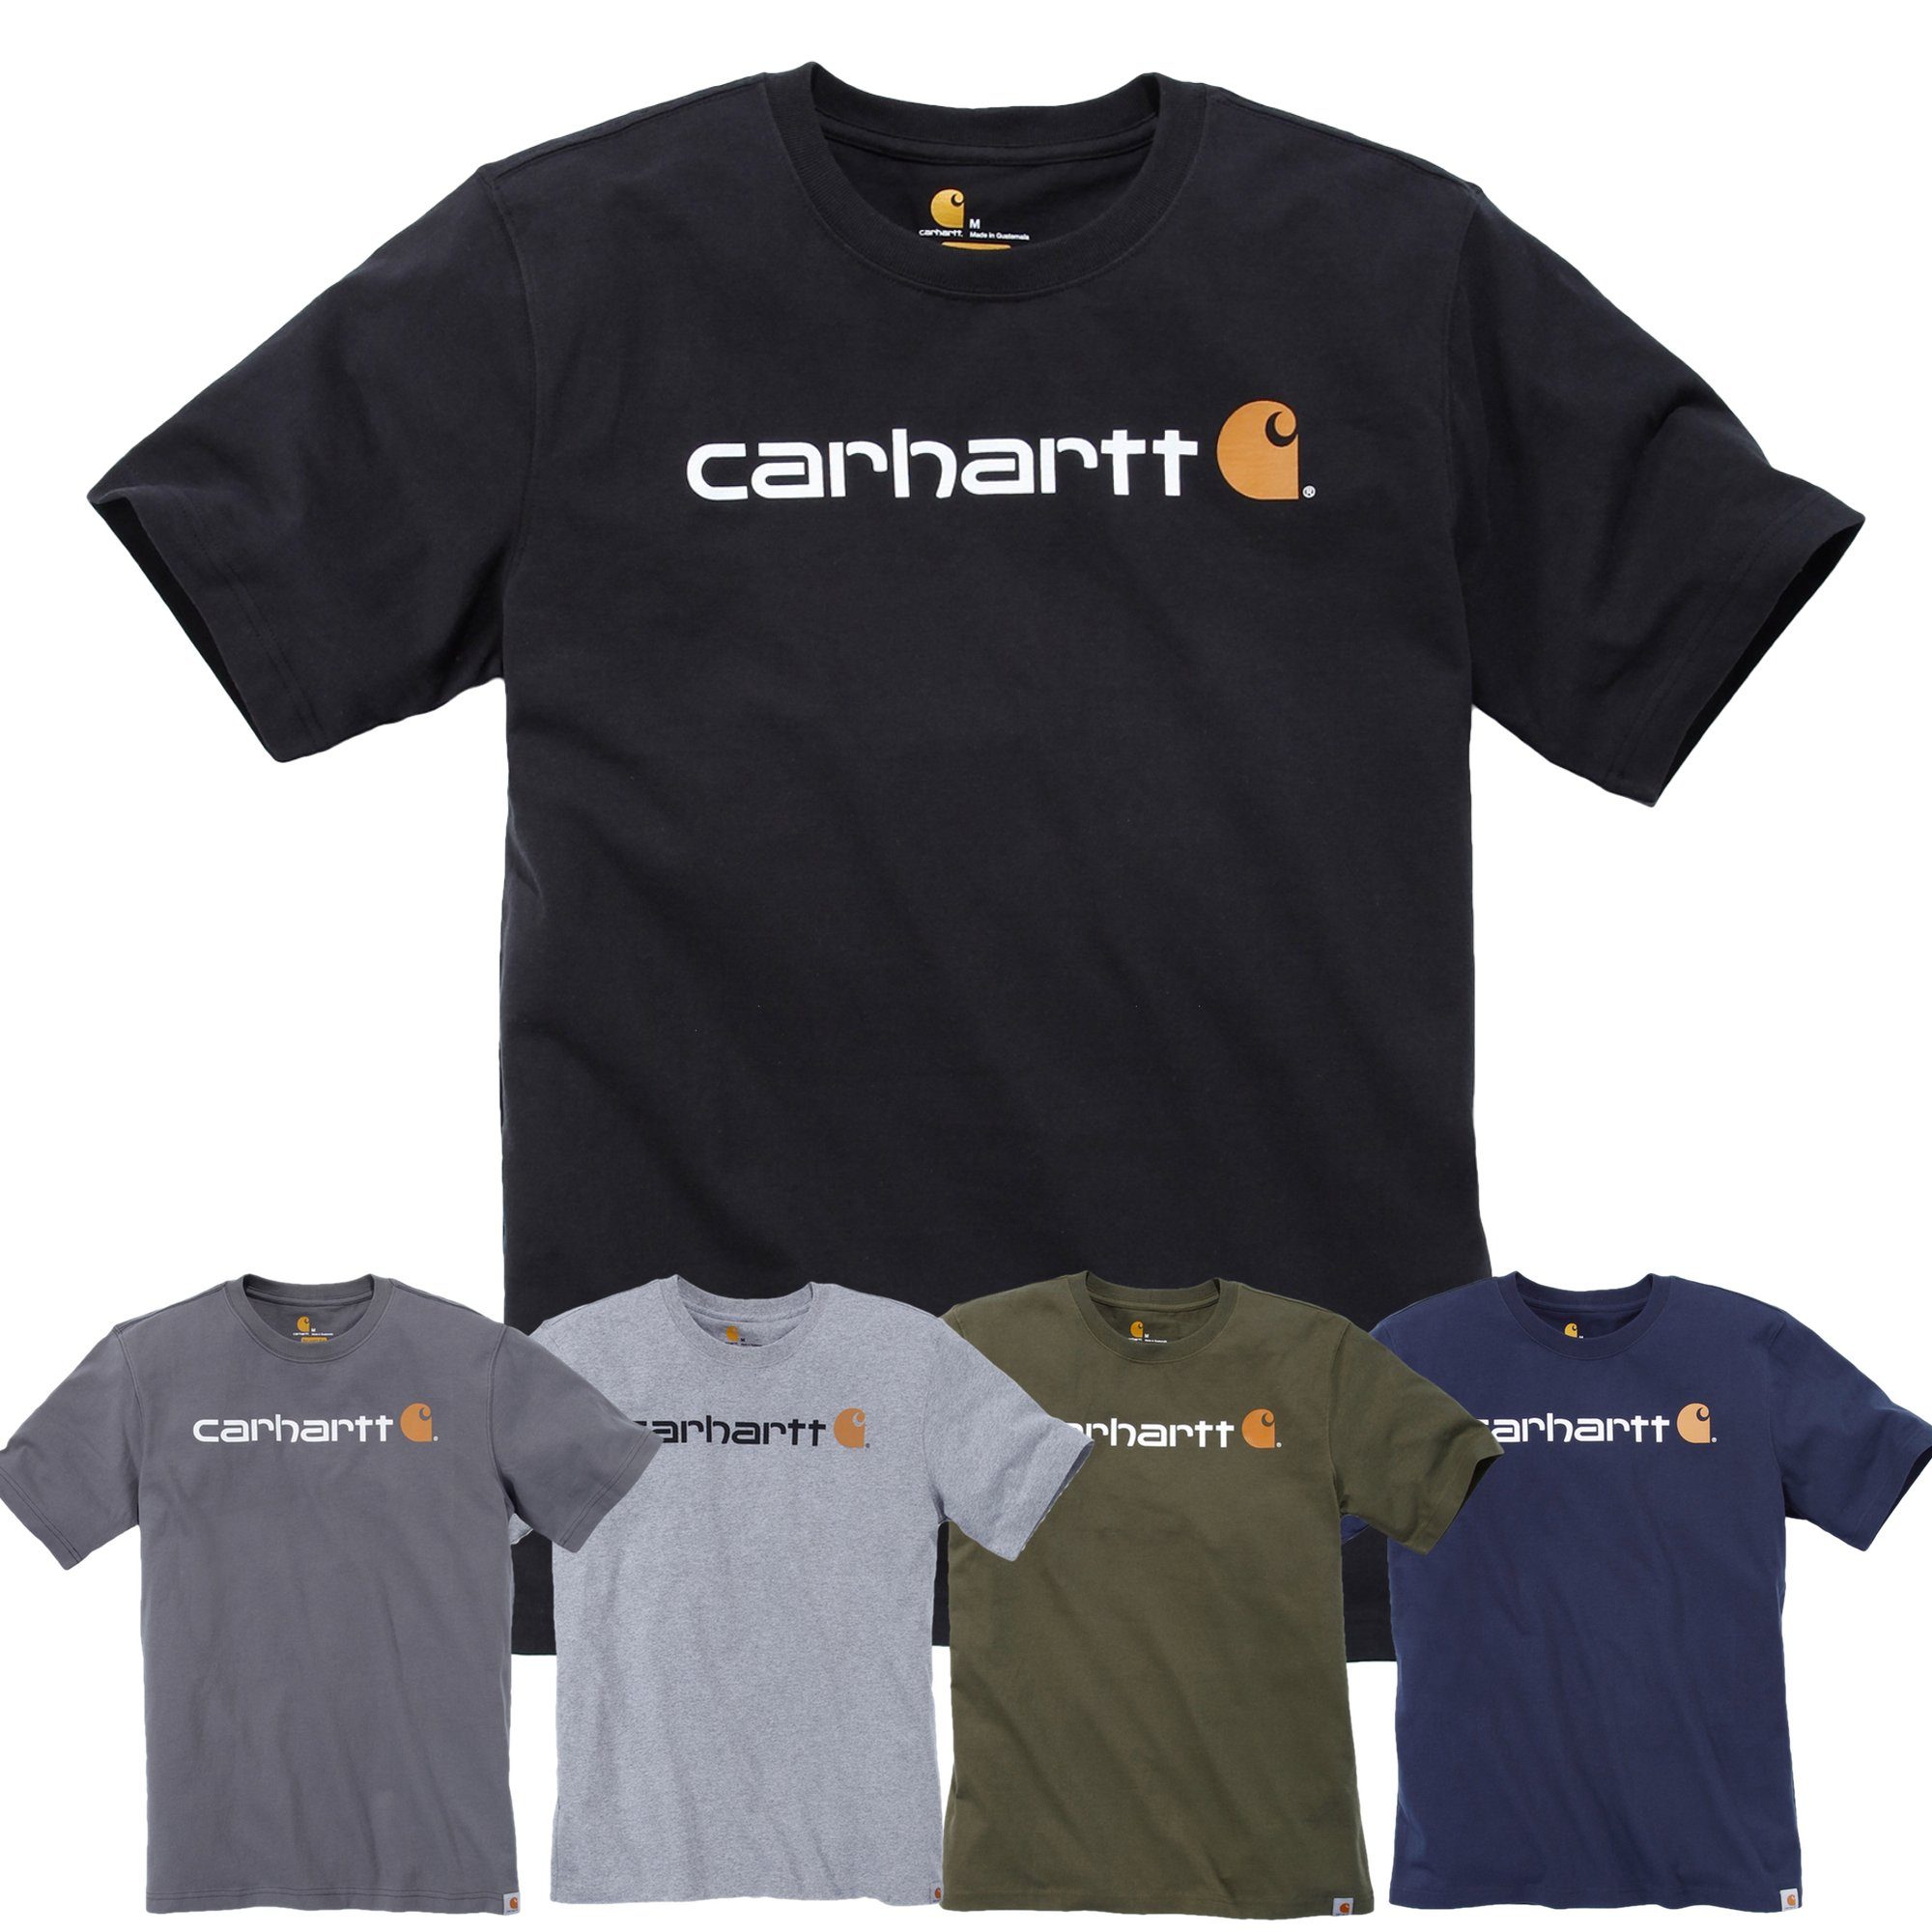 Herren Logo T-Shirt heather Graphic Adult Carhartt Carhartt carbon Relaxed Fit Short-Sleeve T-Shirt Heavyweight